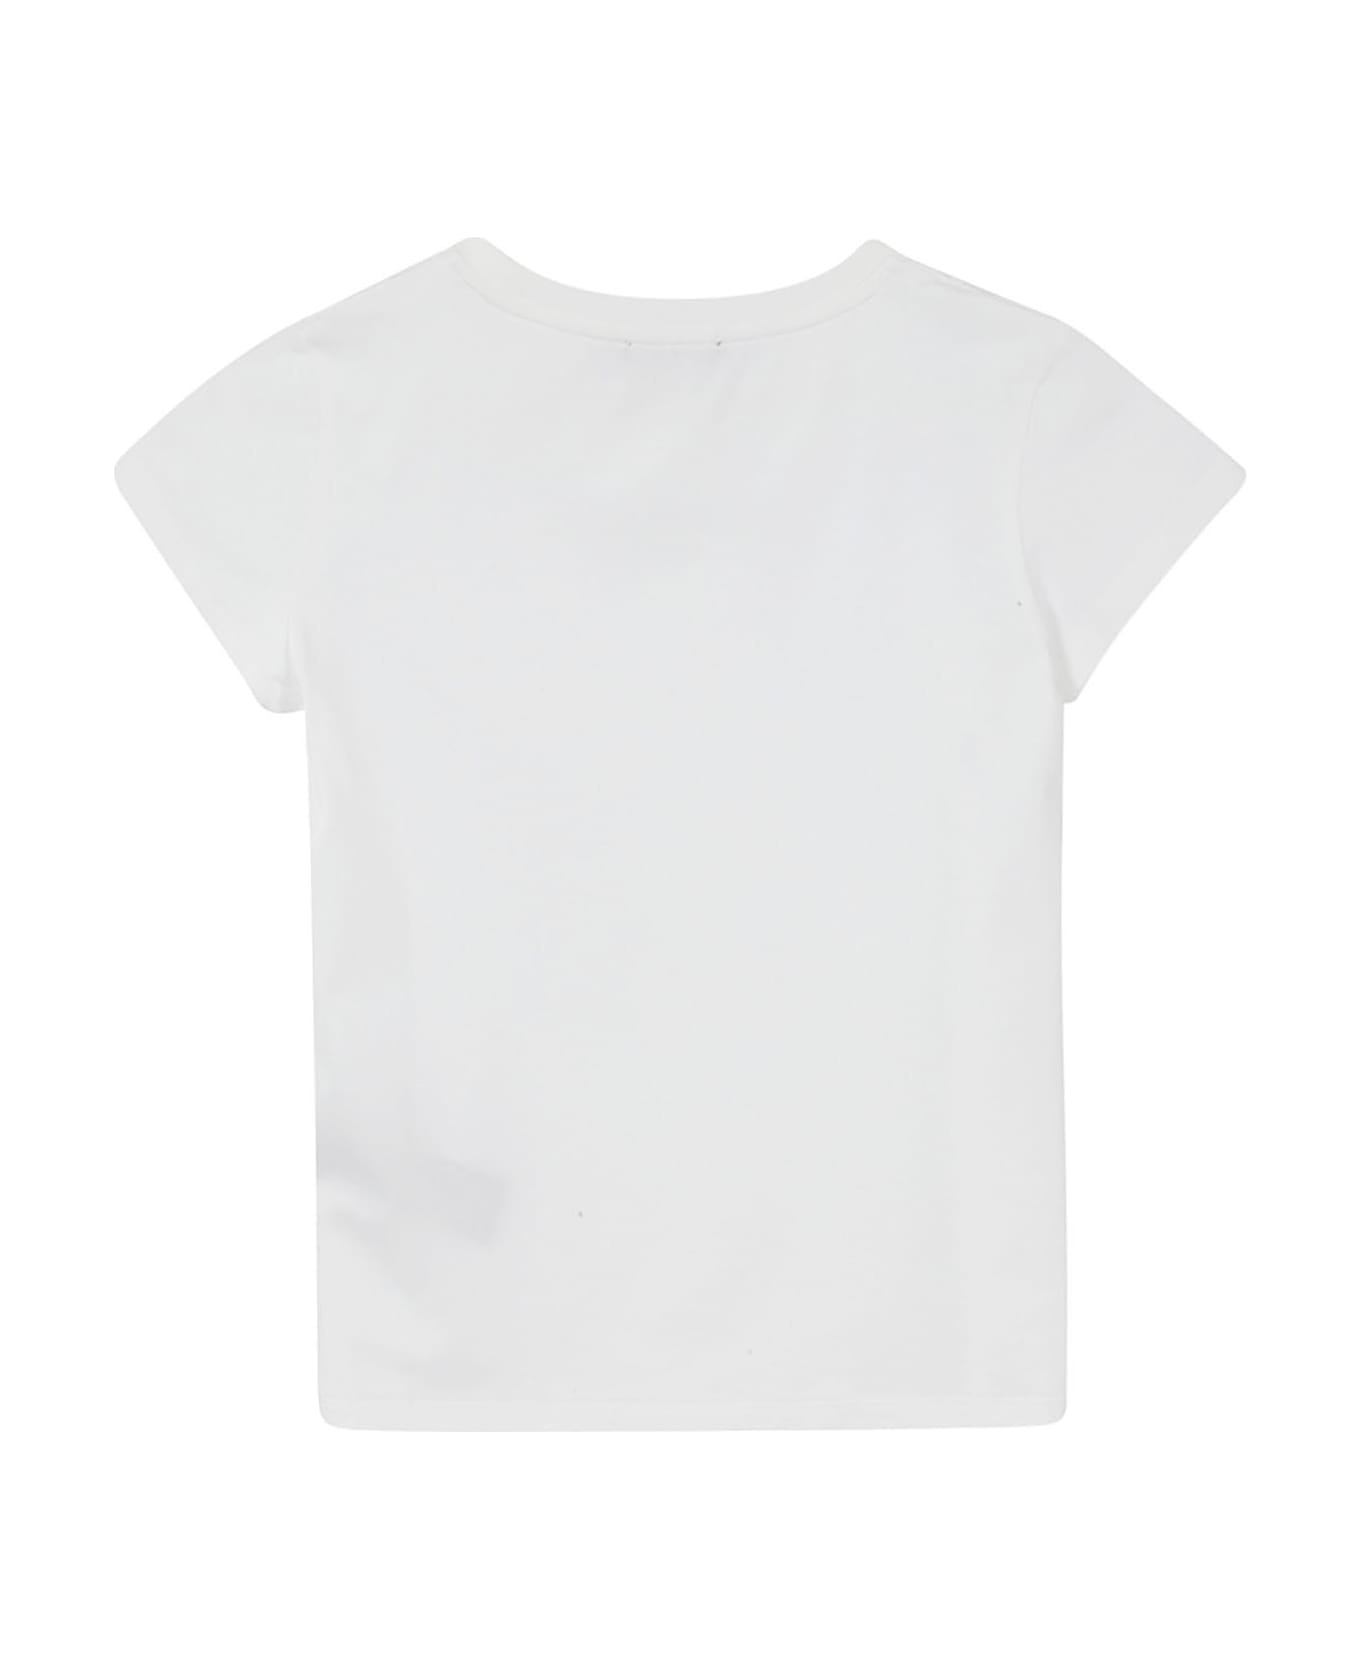 Balmain T Shirt - White Tシャツ＆ポロシャツ